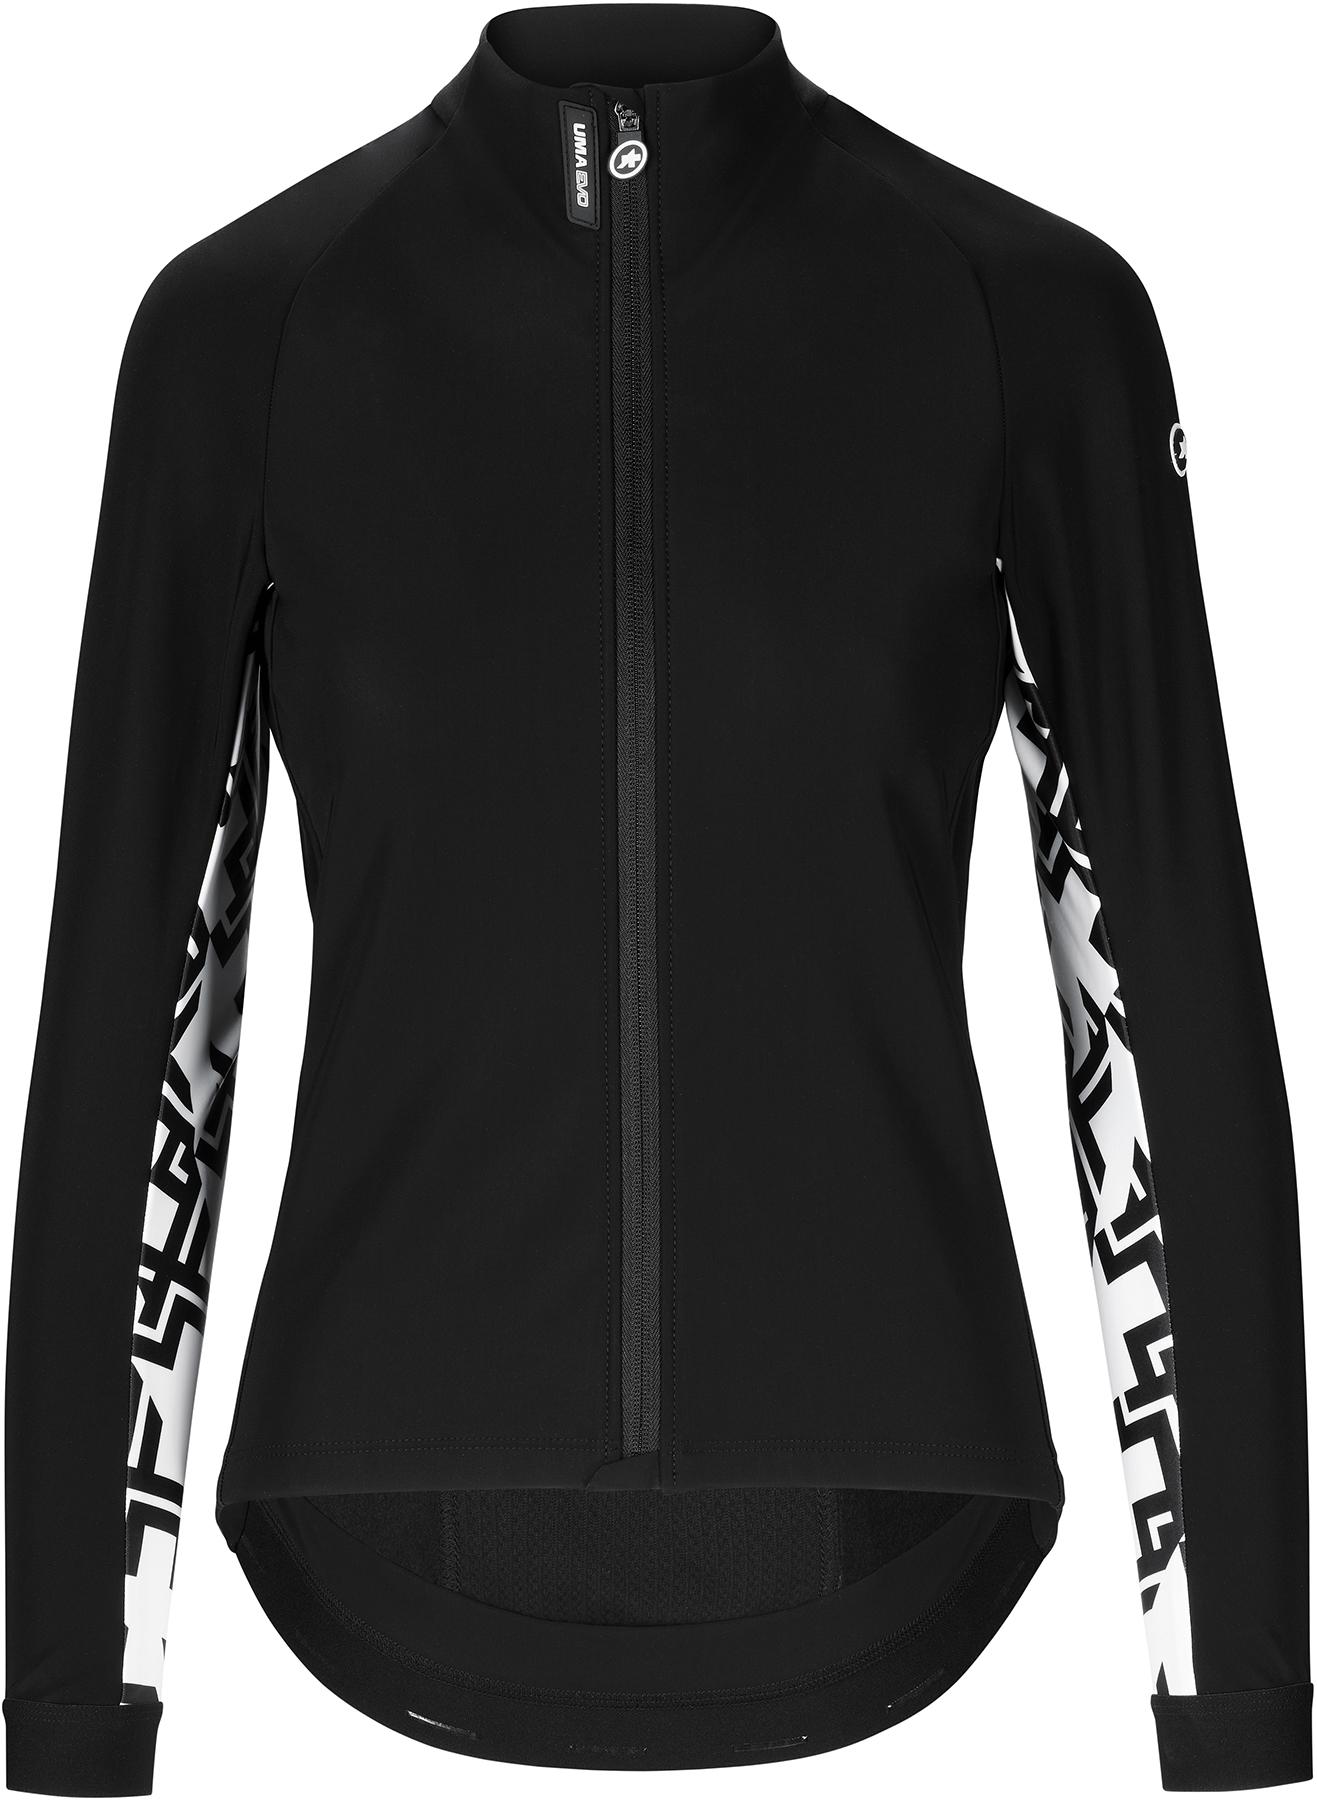 Assos Uma Gt Evo Winter Cycling Jacket - Black Series